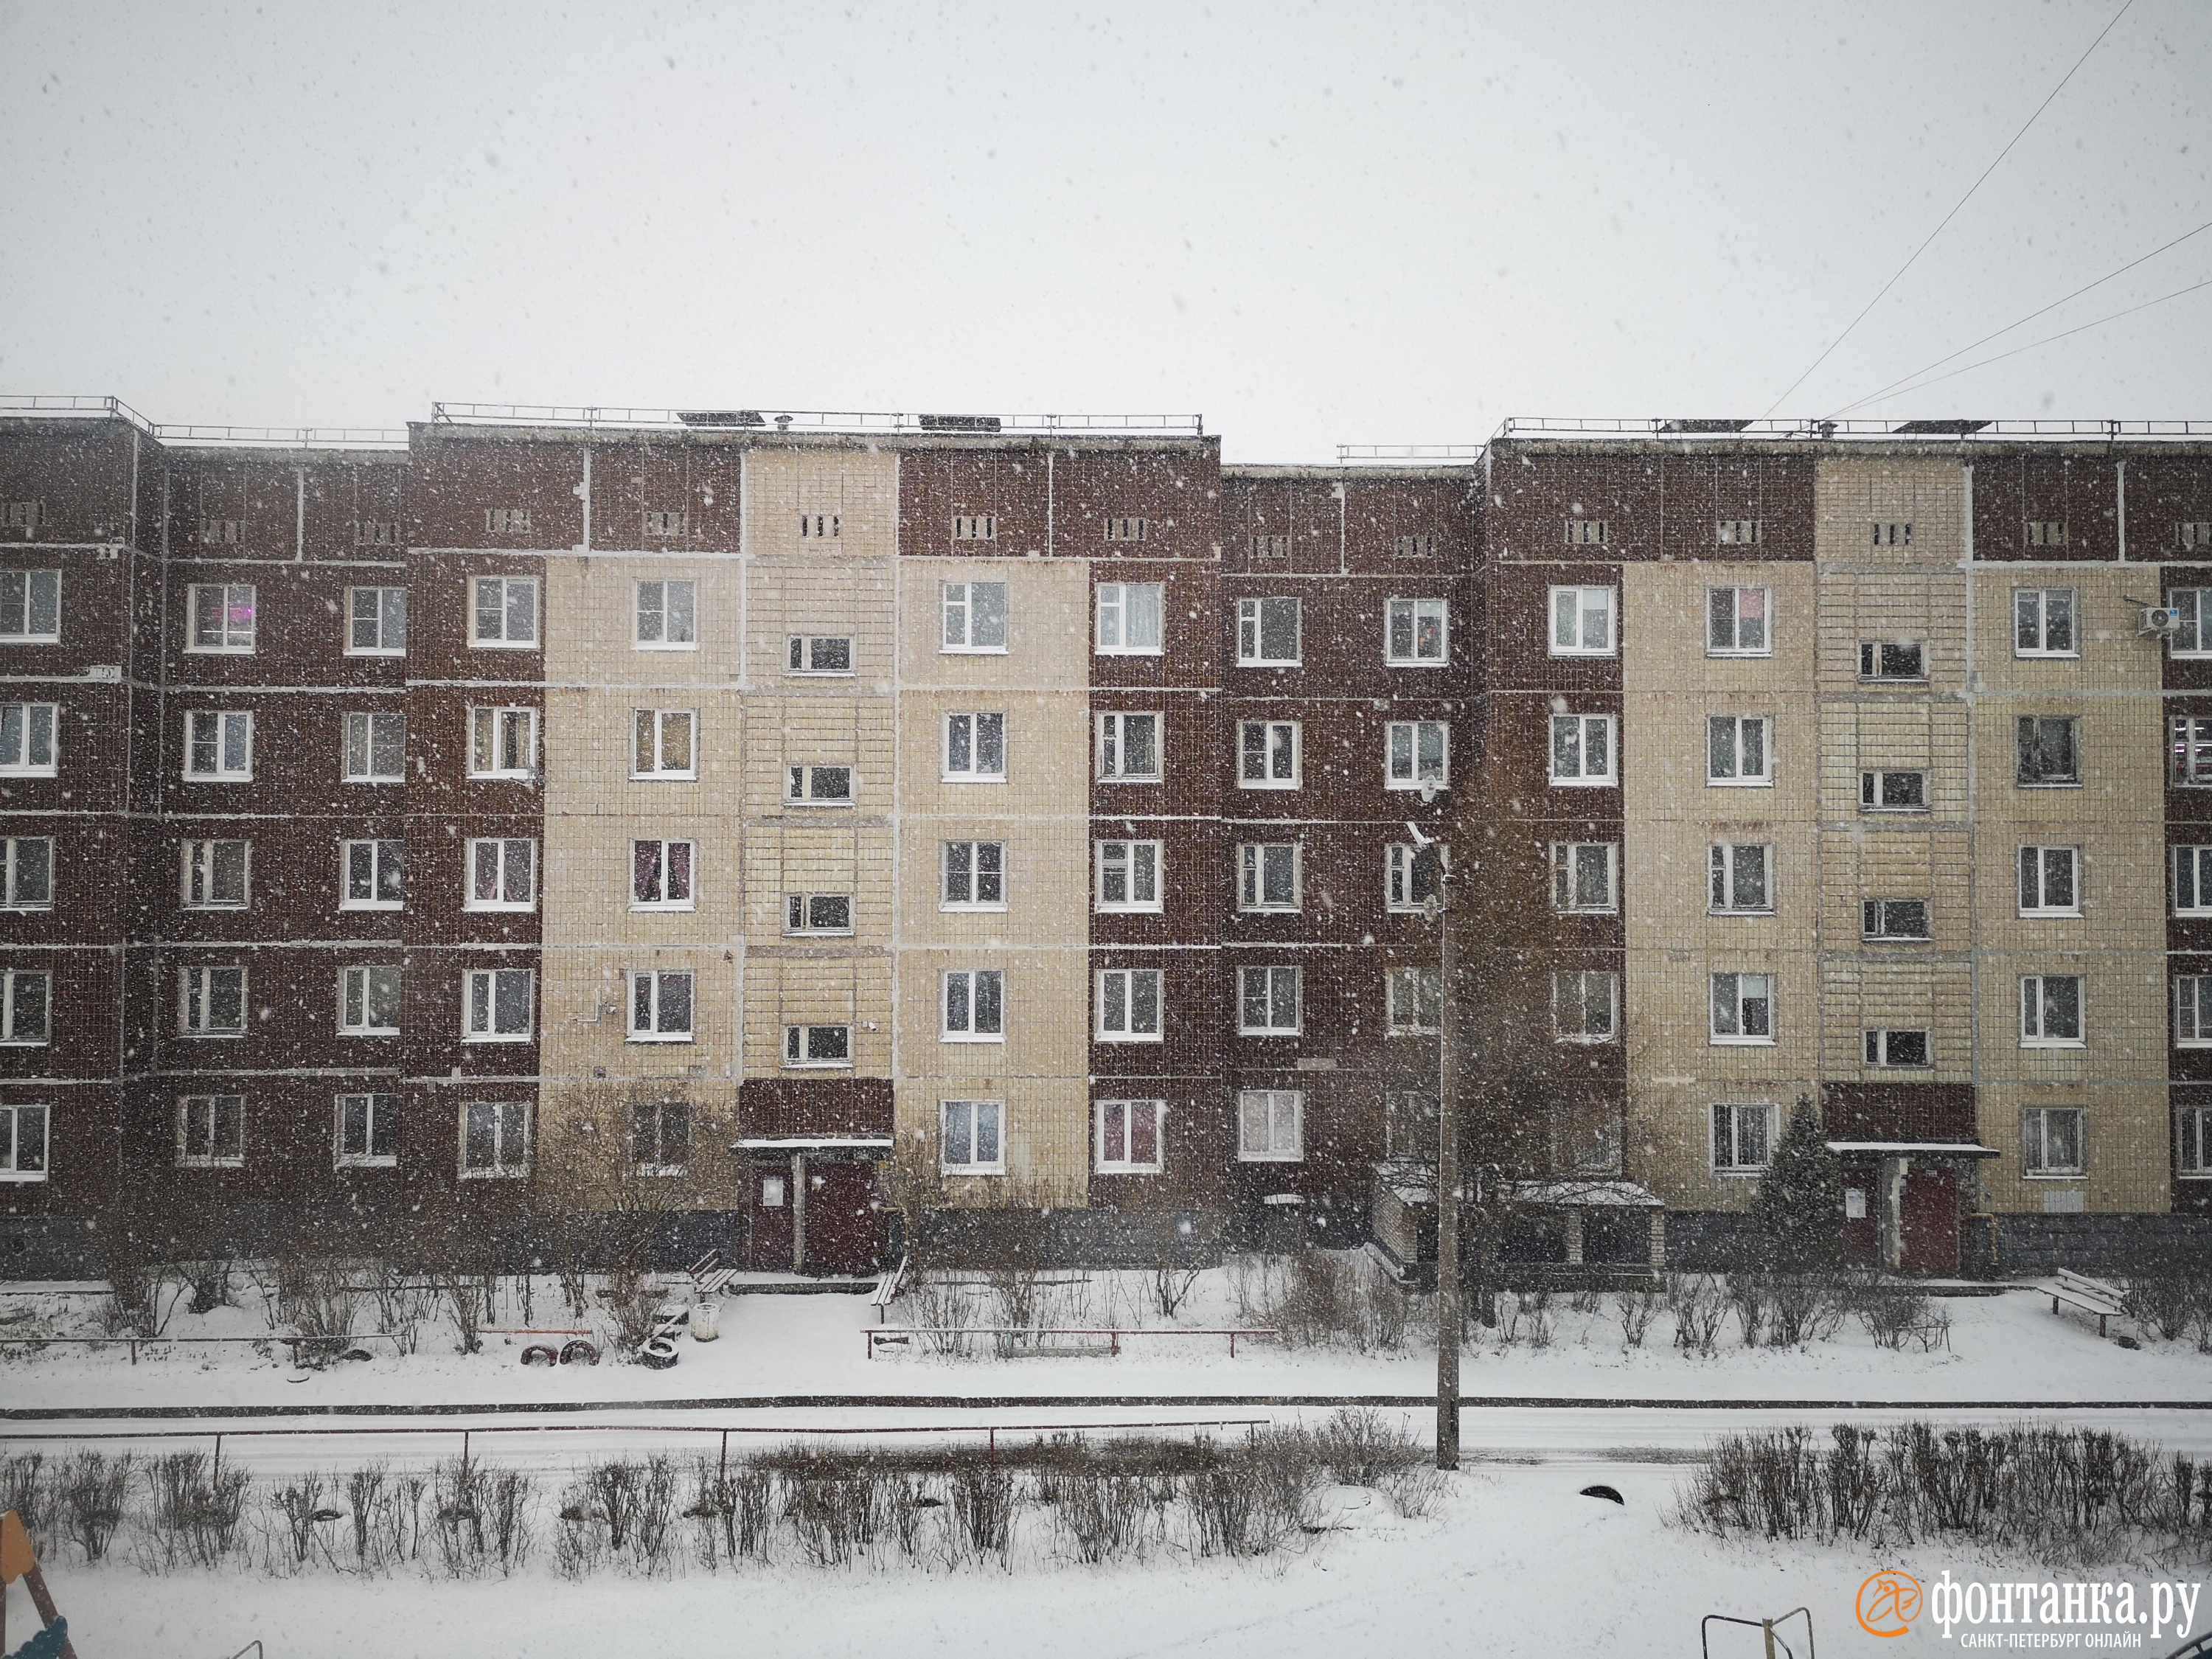 Снежная туча на подступах. Что скоро ждет Петербург, уже показывает Ленобласть